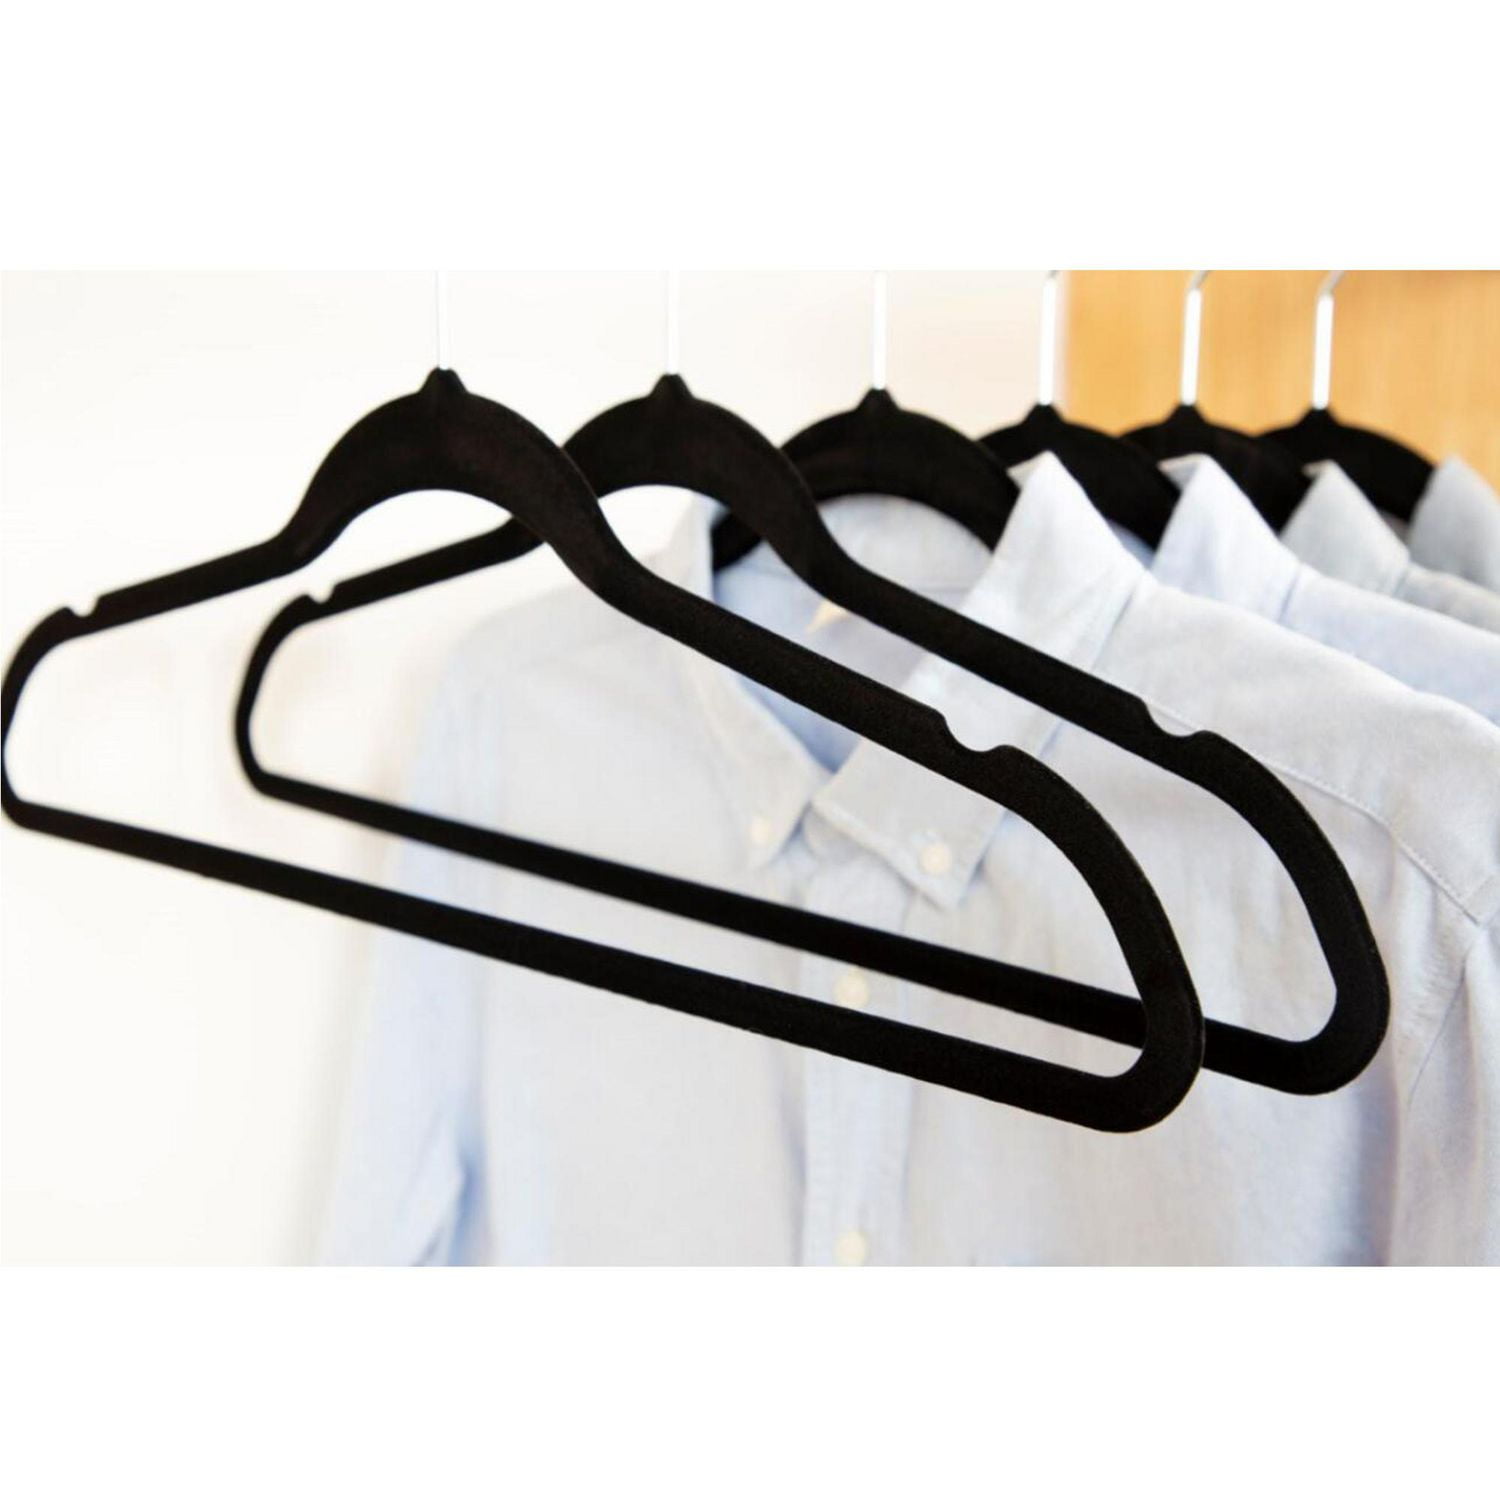 Premium Velvet Hangers - Non-Slip, Durable, Space Saving Felt